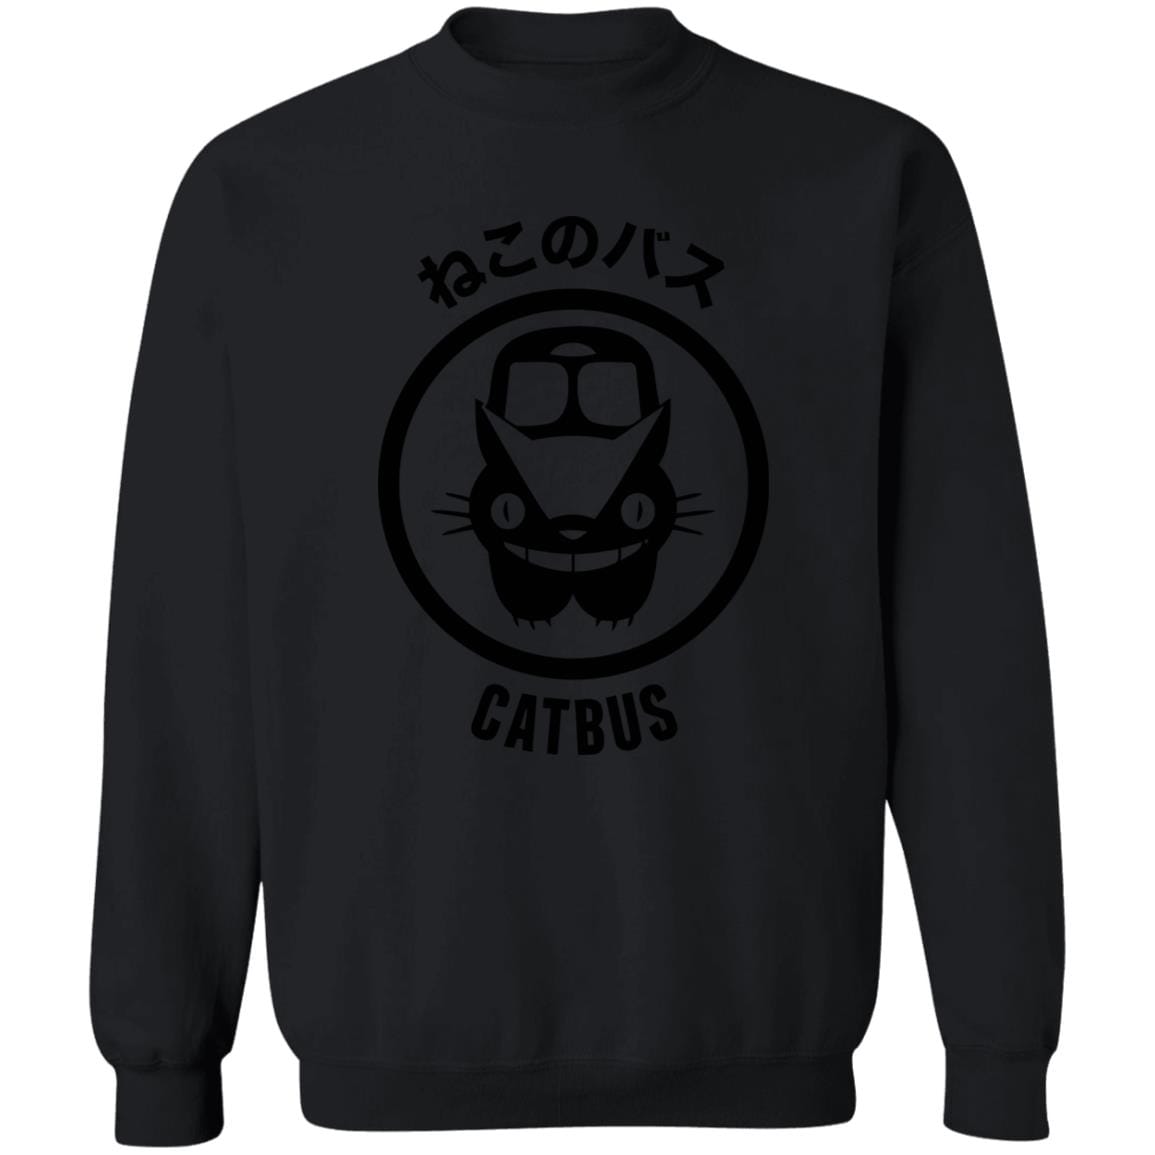 My Neighbor Totoro – Cat Bus Logo Sweatshirt